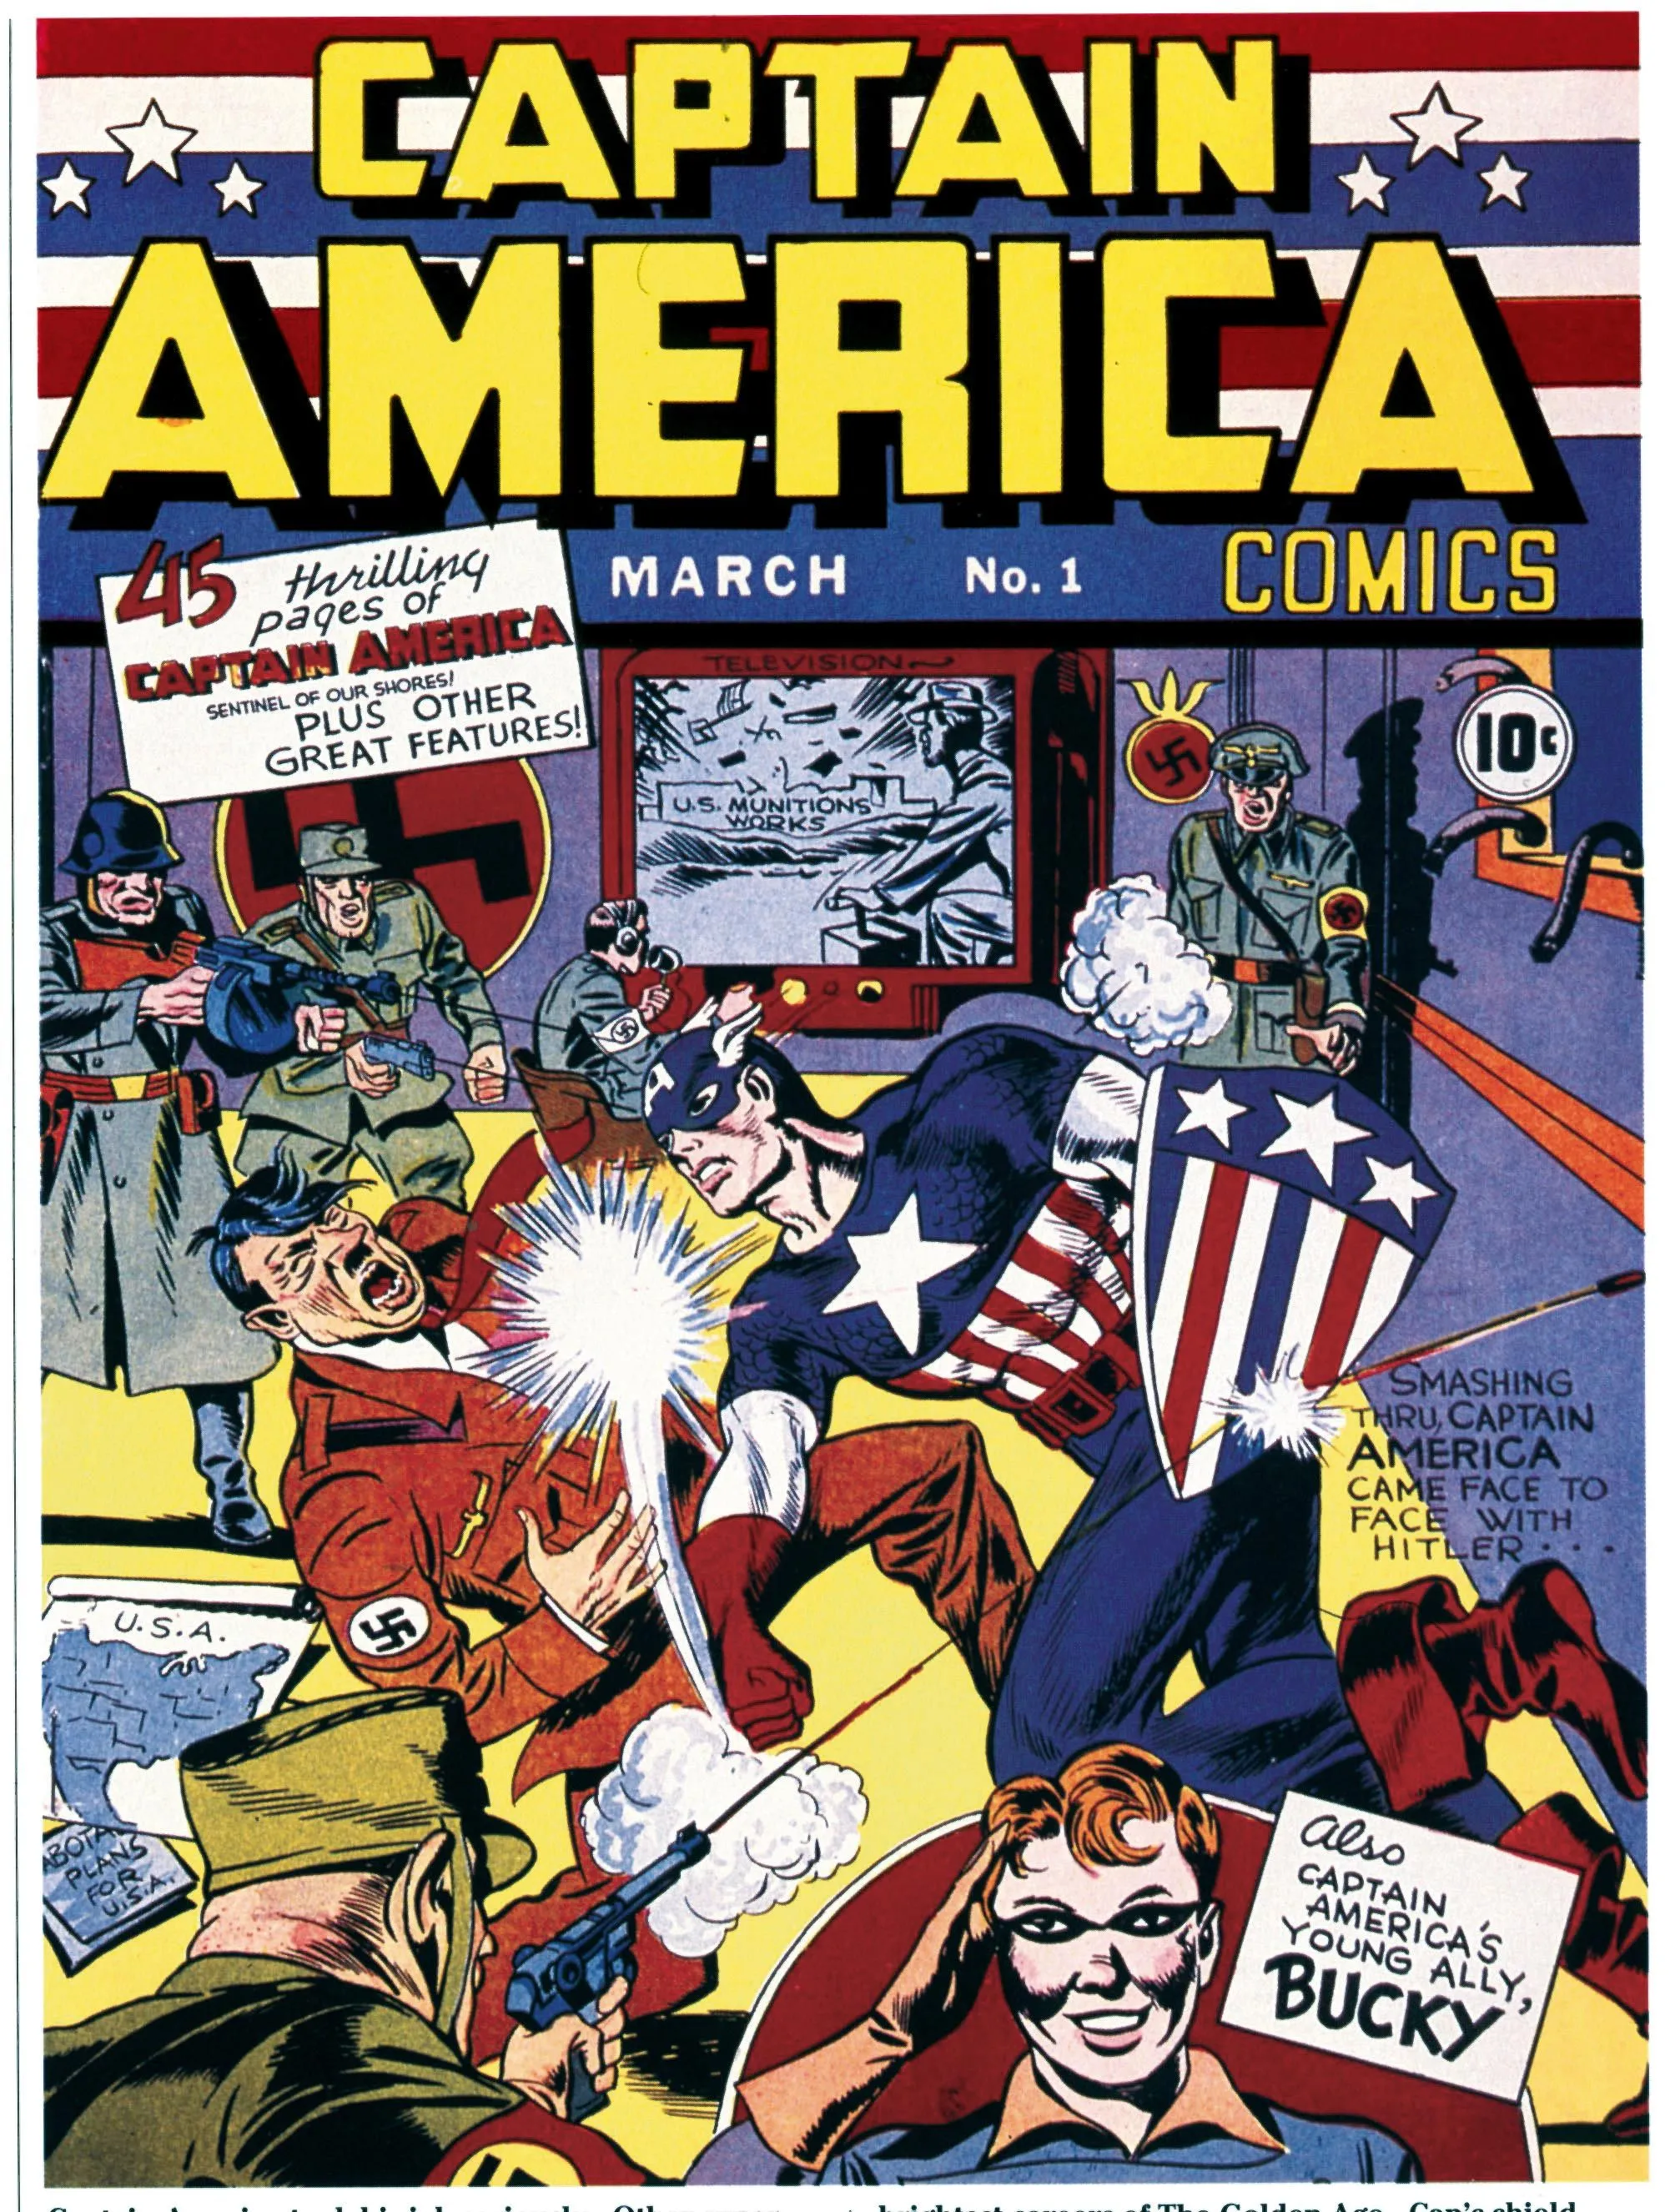 Doc. 4 Les super-héros des comics américains